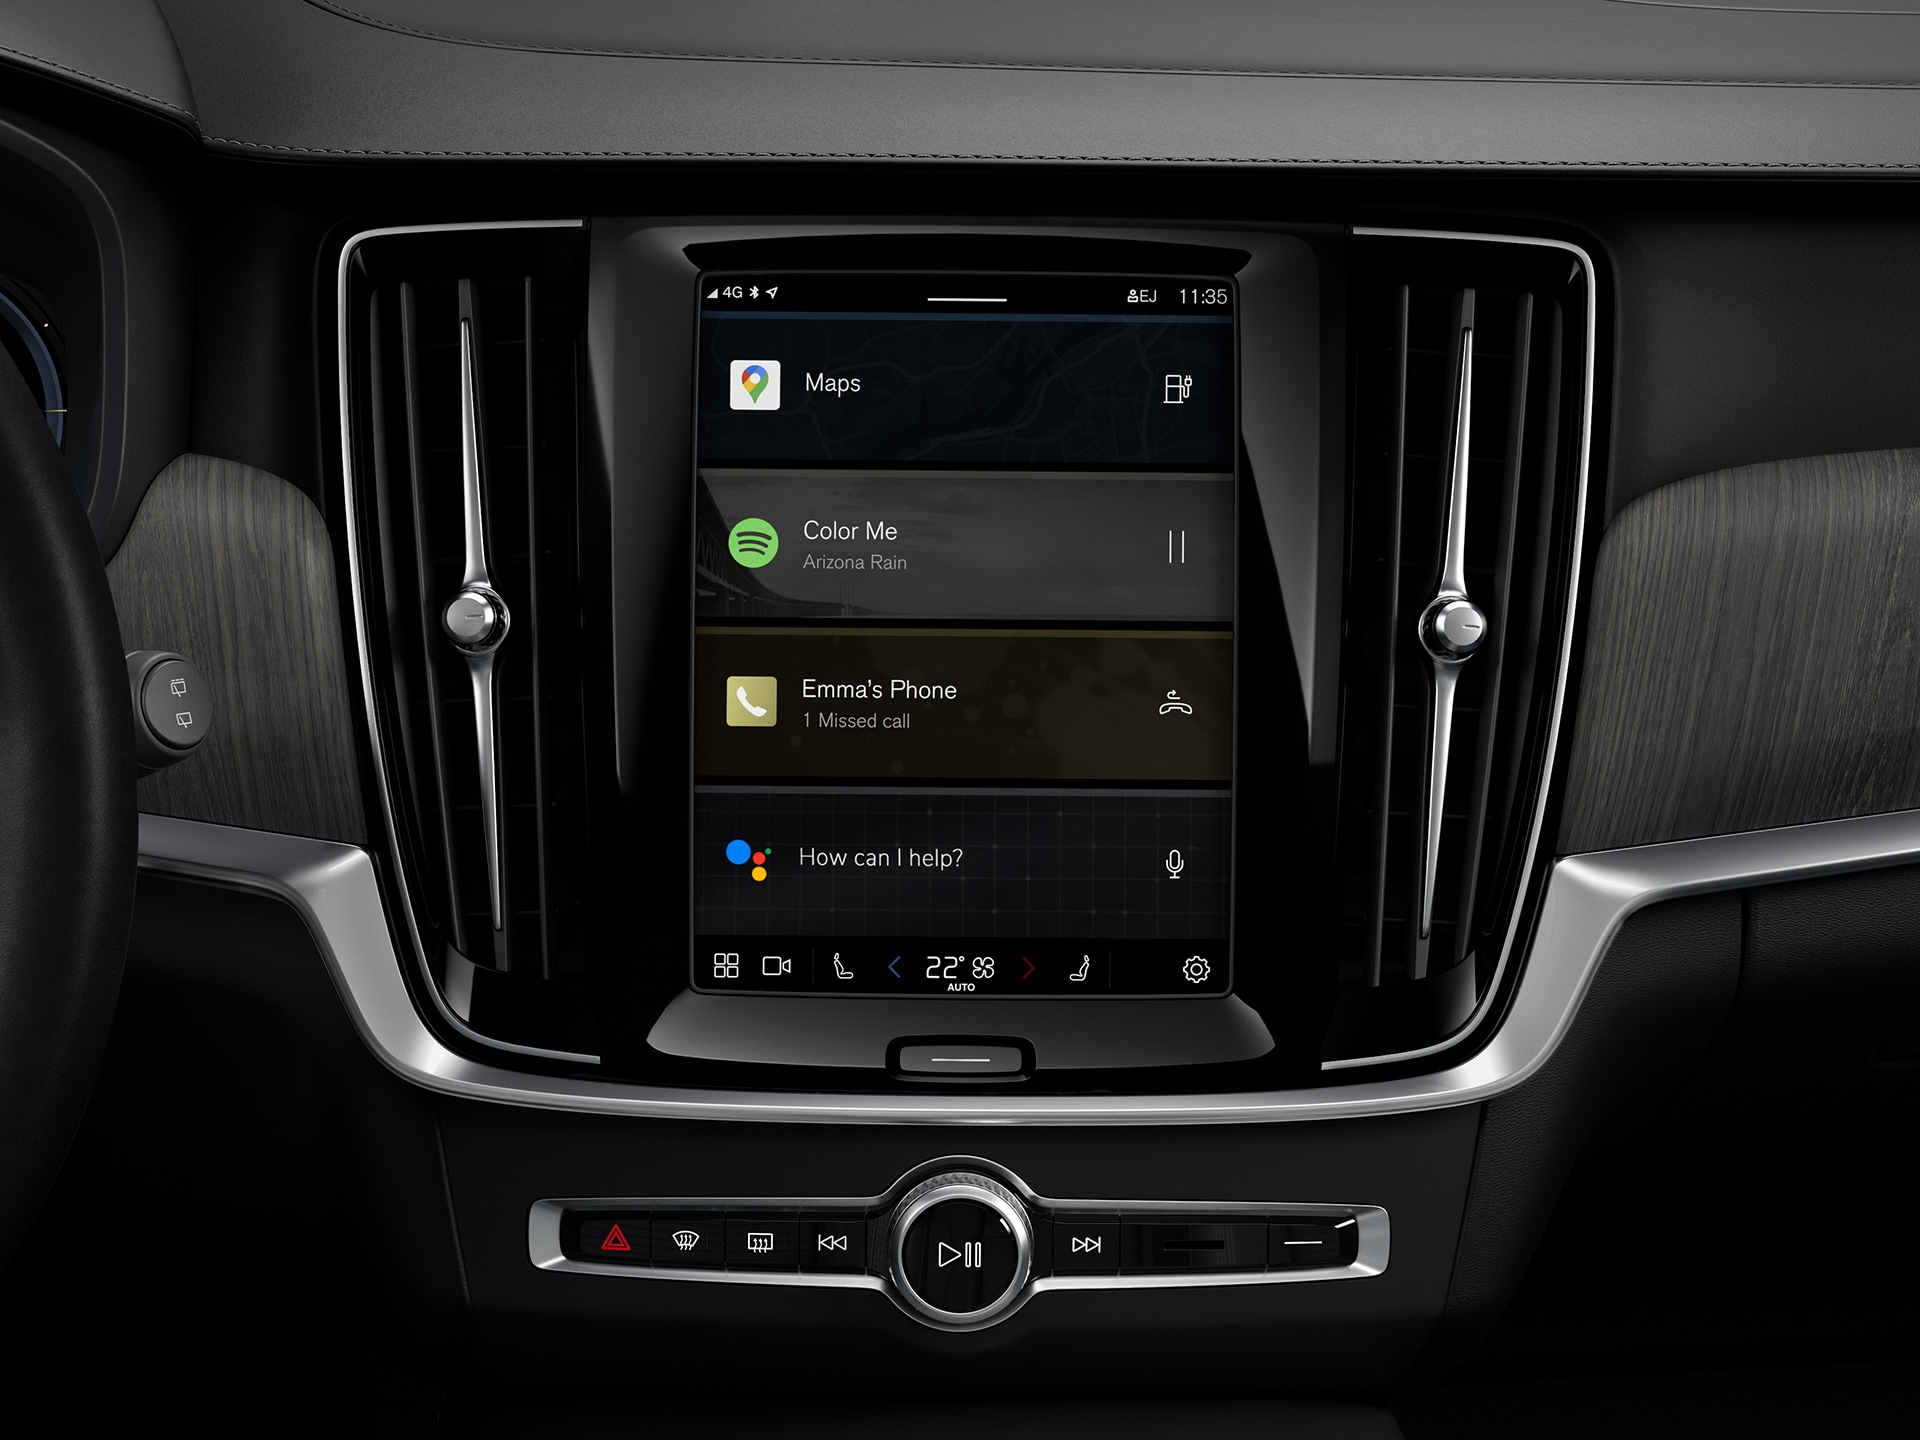 Midterkonsollen i en Volvo stationcar, der viser det indbyggede Google infotainment-system.